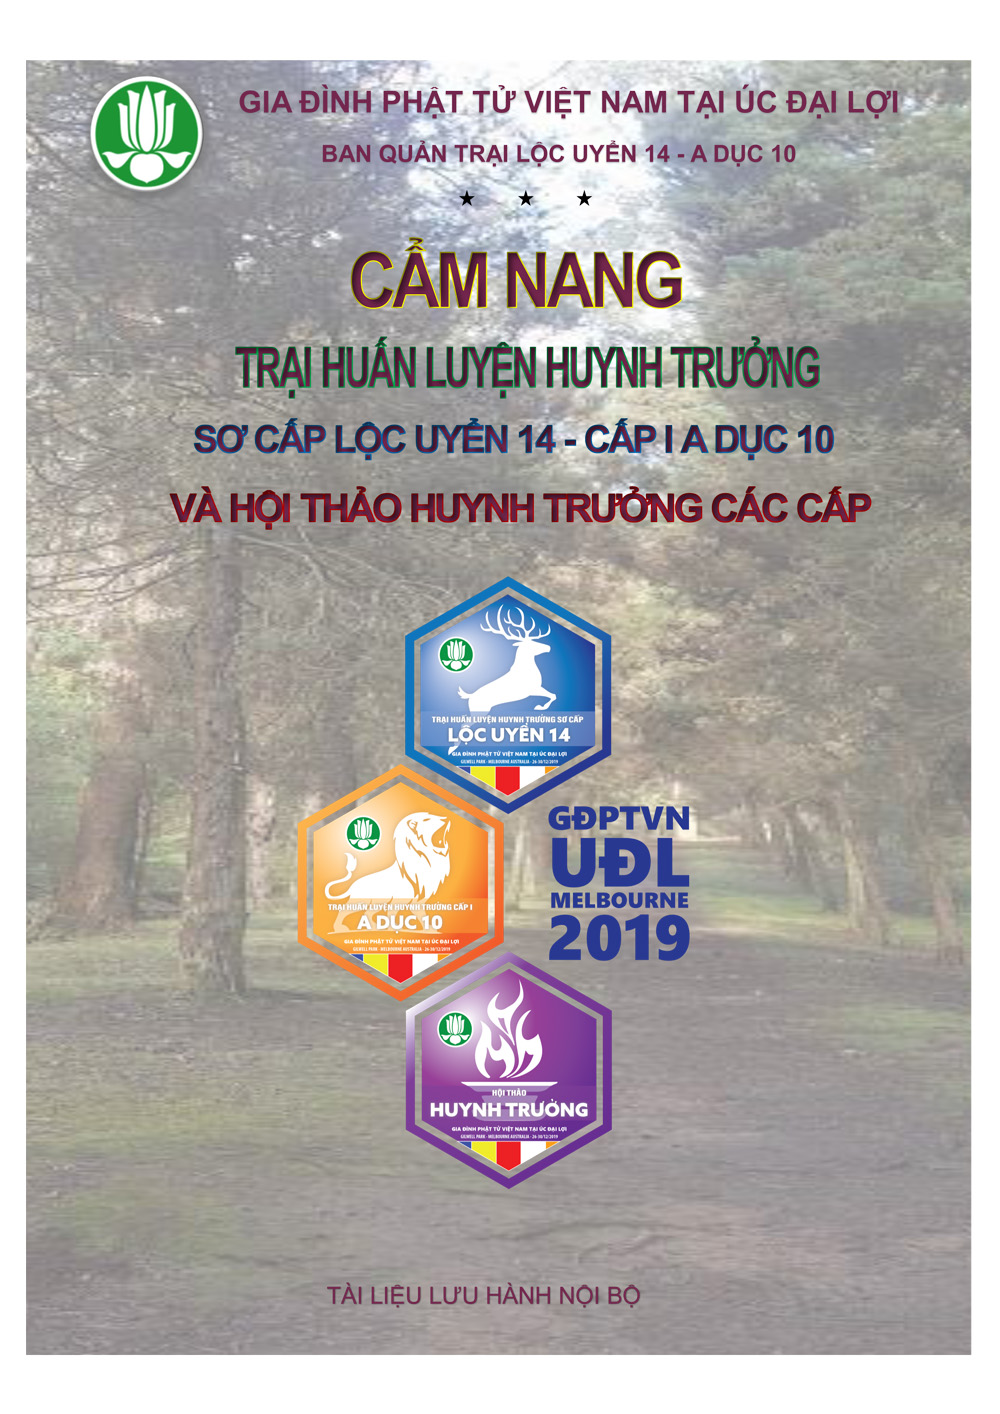 Cam nang huan luyen huynh truong-loc uyen-2019